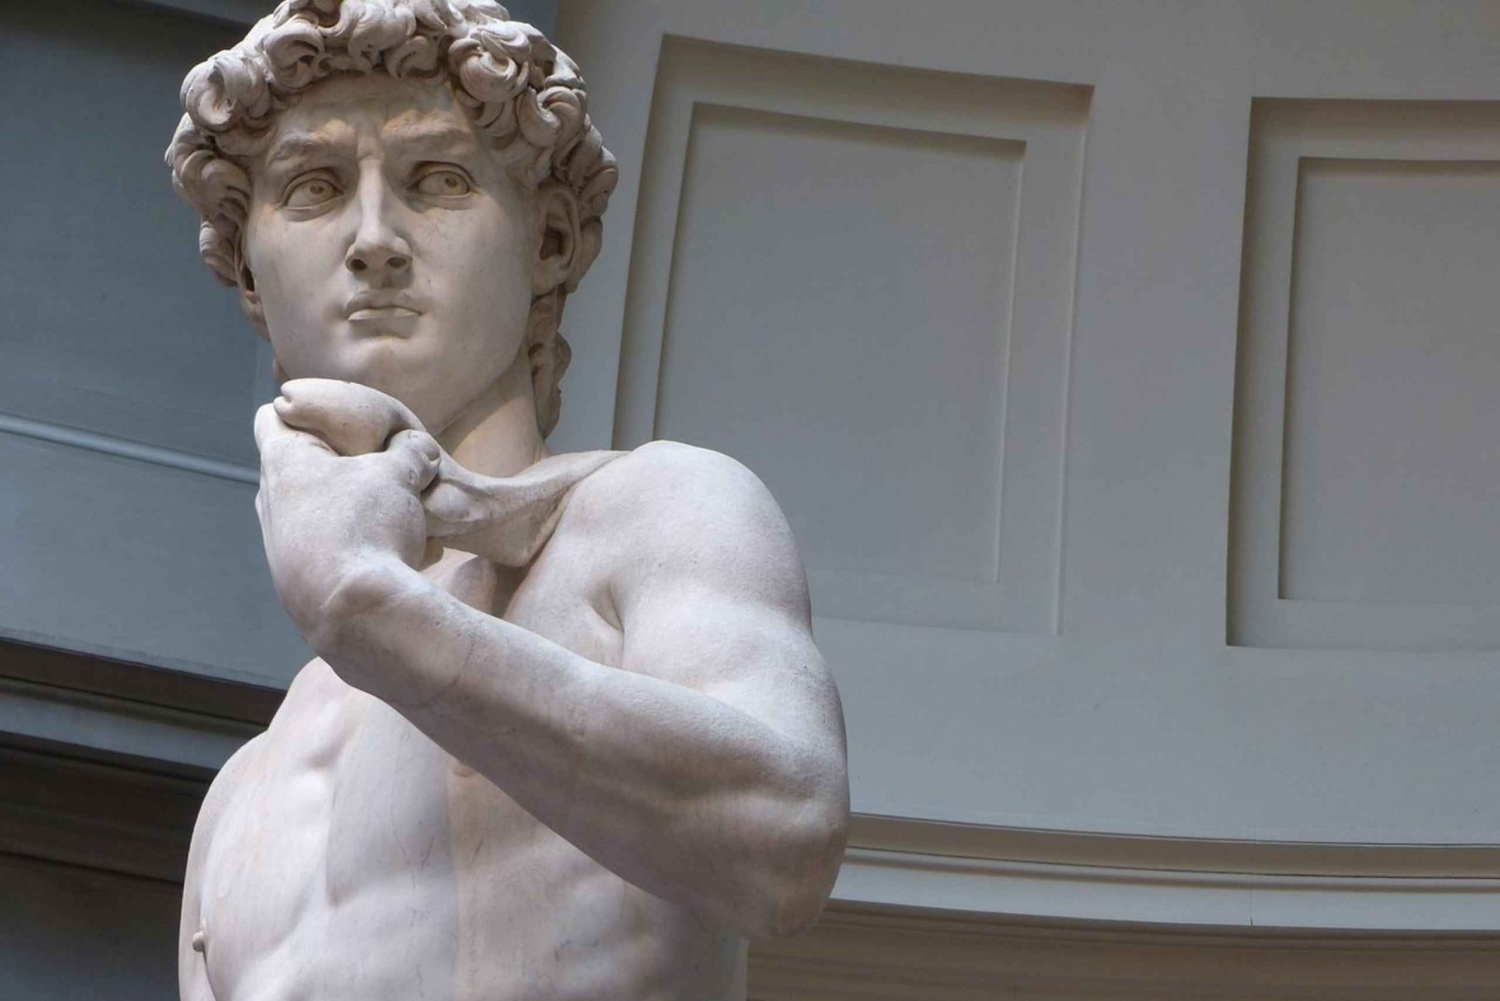 Firenze: Michelangelon Daavidin patsaan kanssa.